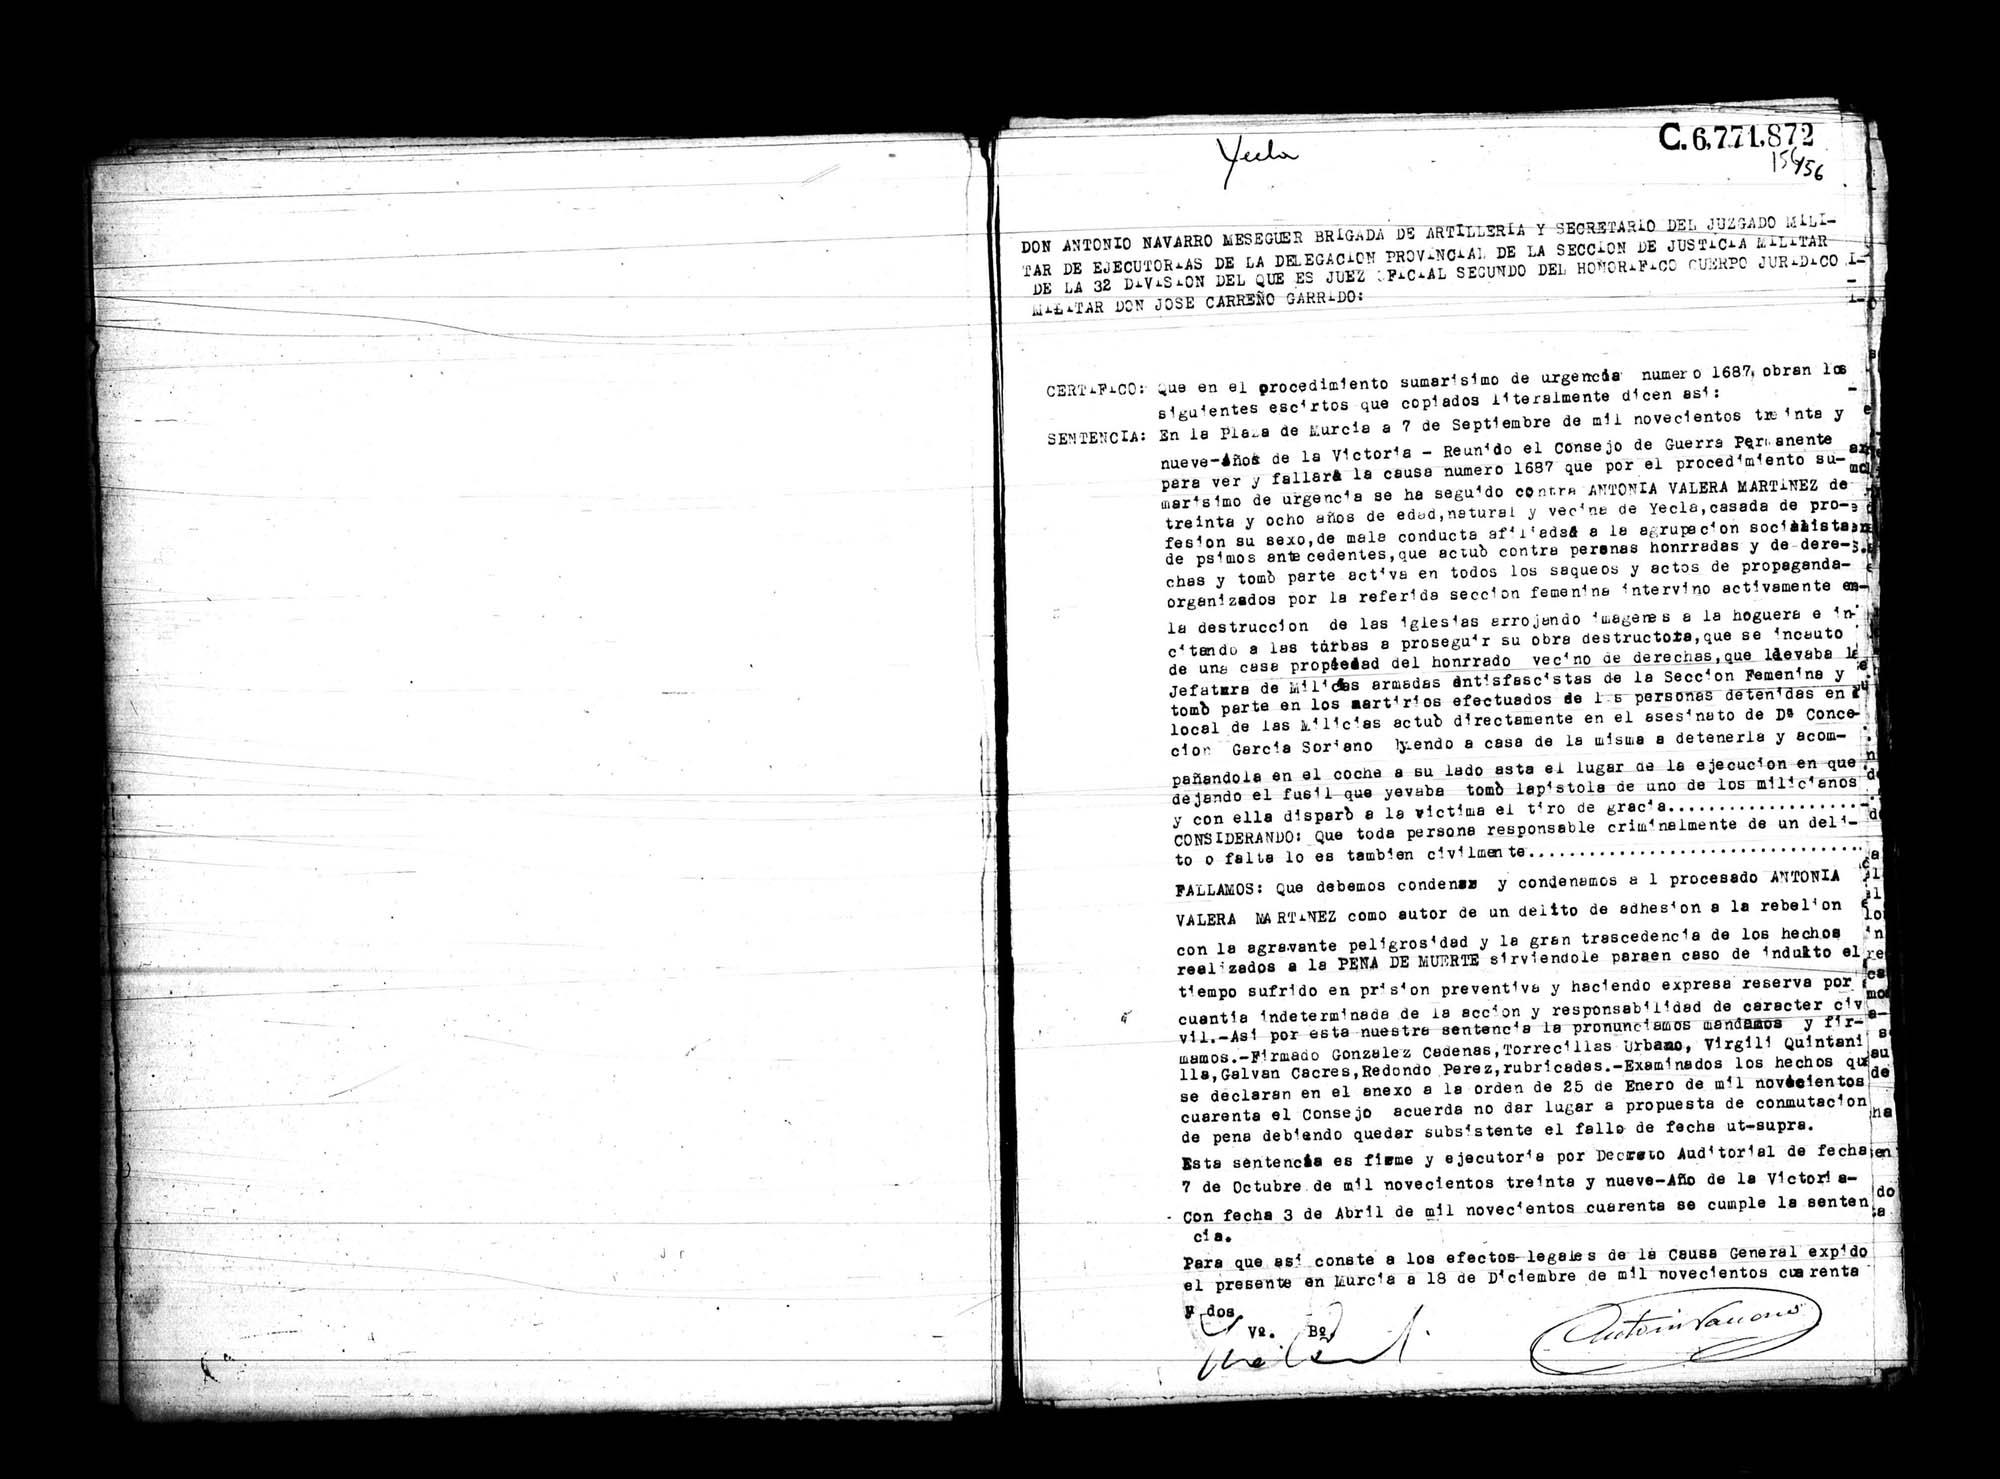 Certificado de la sentencia pronunciada contra Antonia Valera Martínez, causa 1687, el 7 de septiembre de 1939 en Murcia.